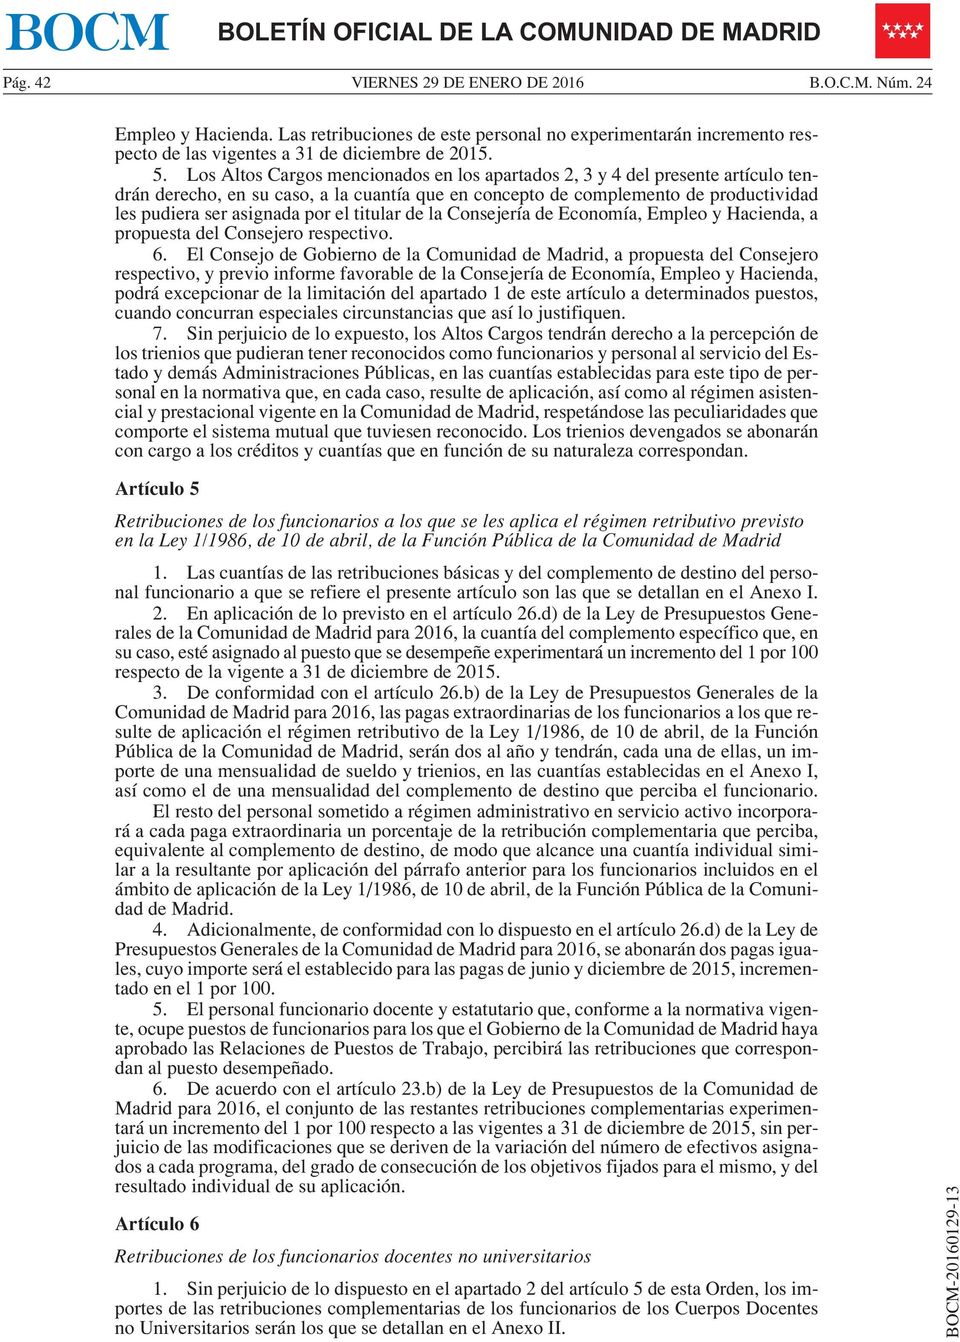 titular de la Consejería de Economía, Empleo y Hacienda, a propuesta del Consejero respectivo. 6.